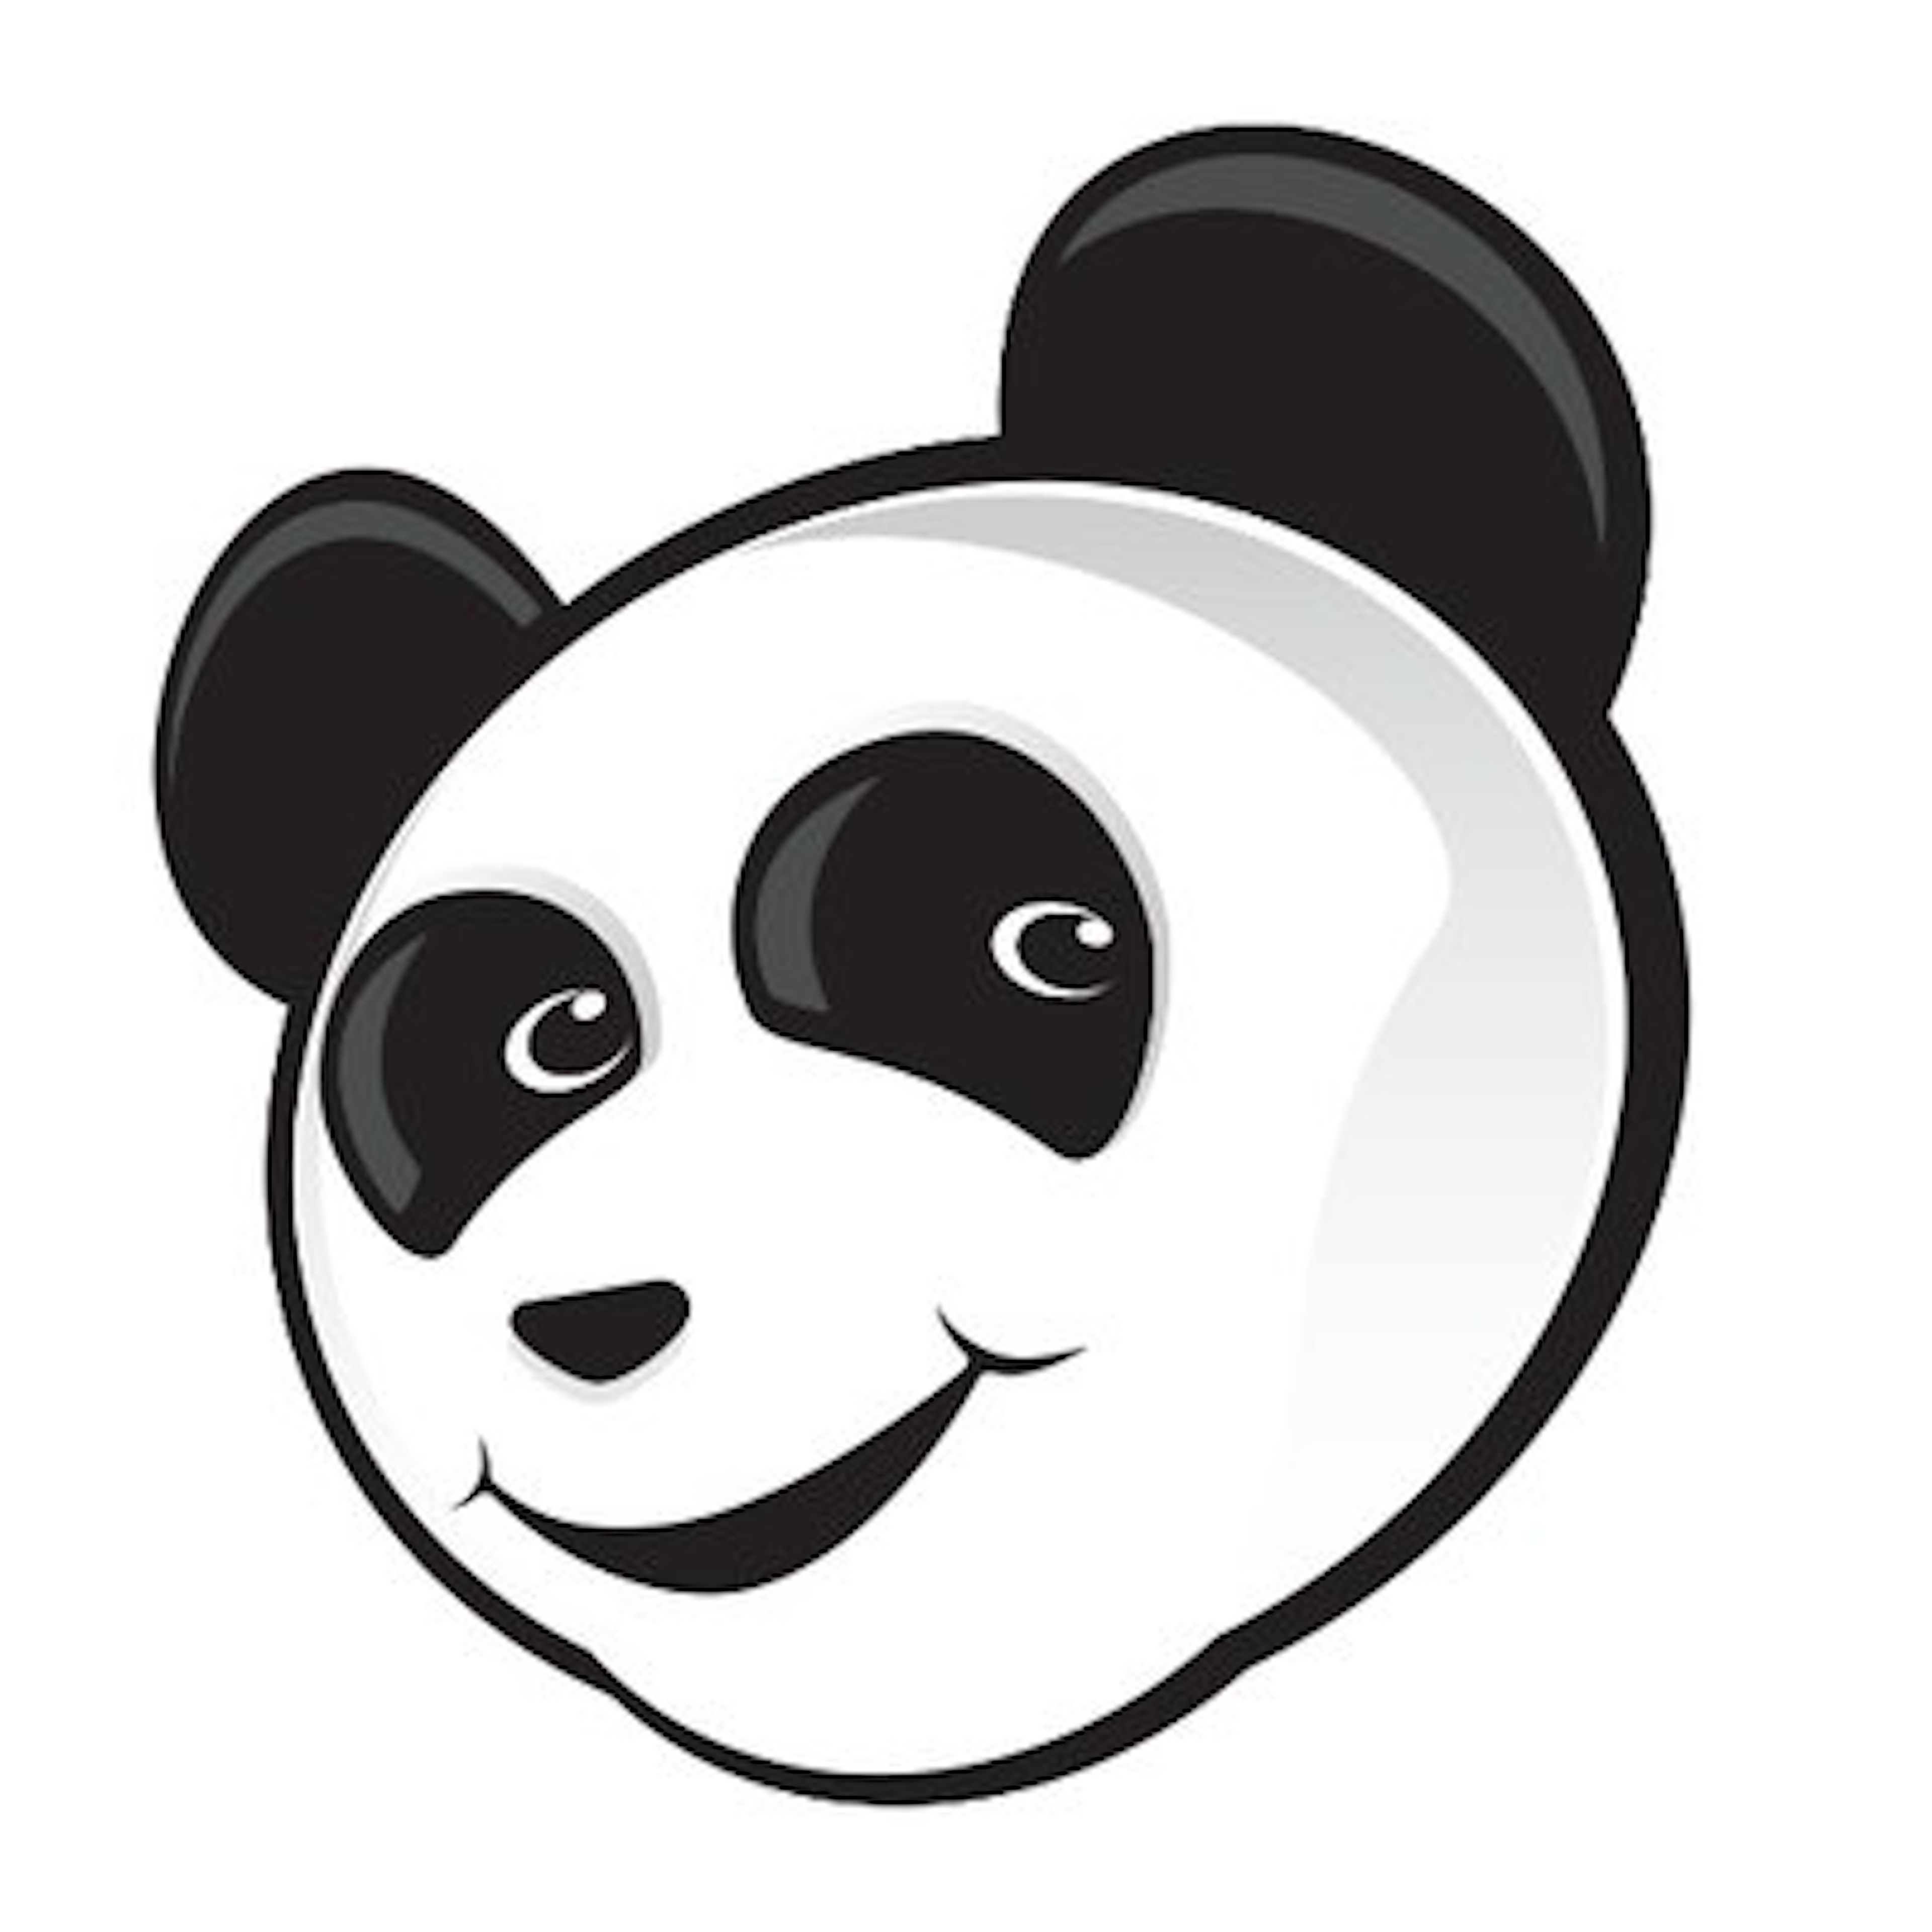 Asset Panda Logo